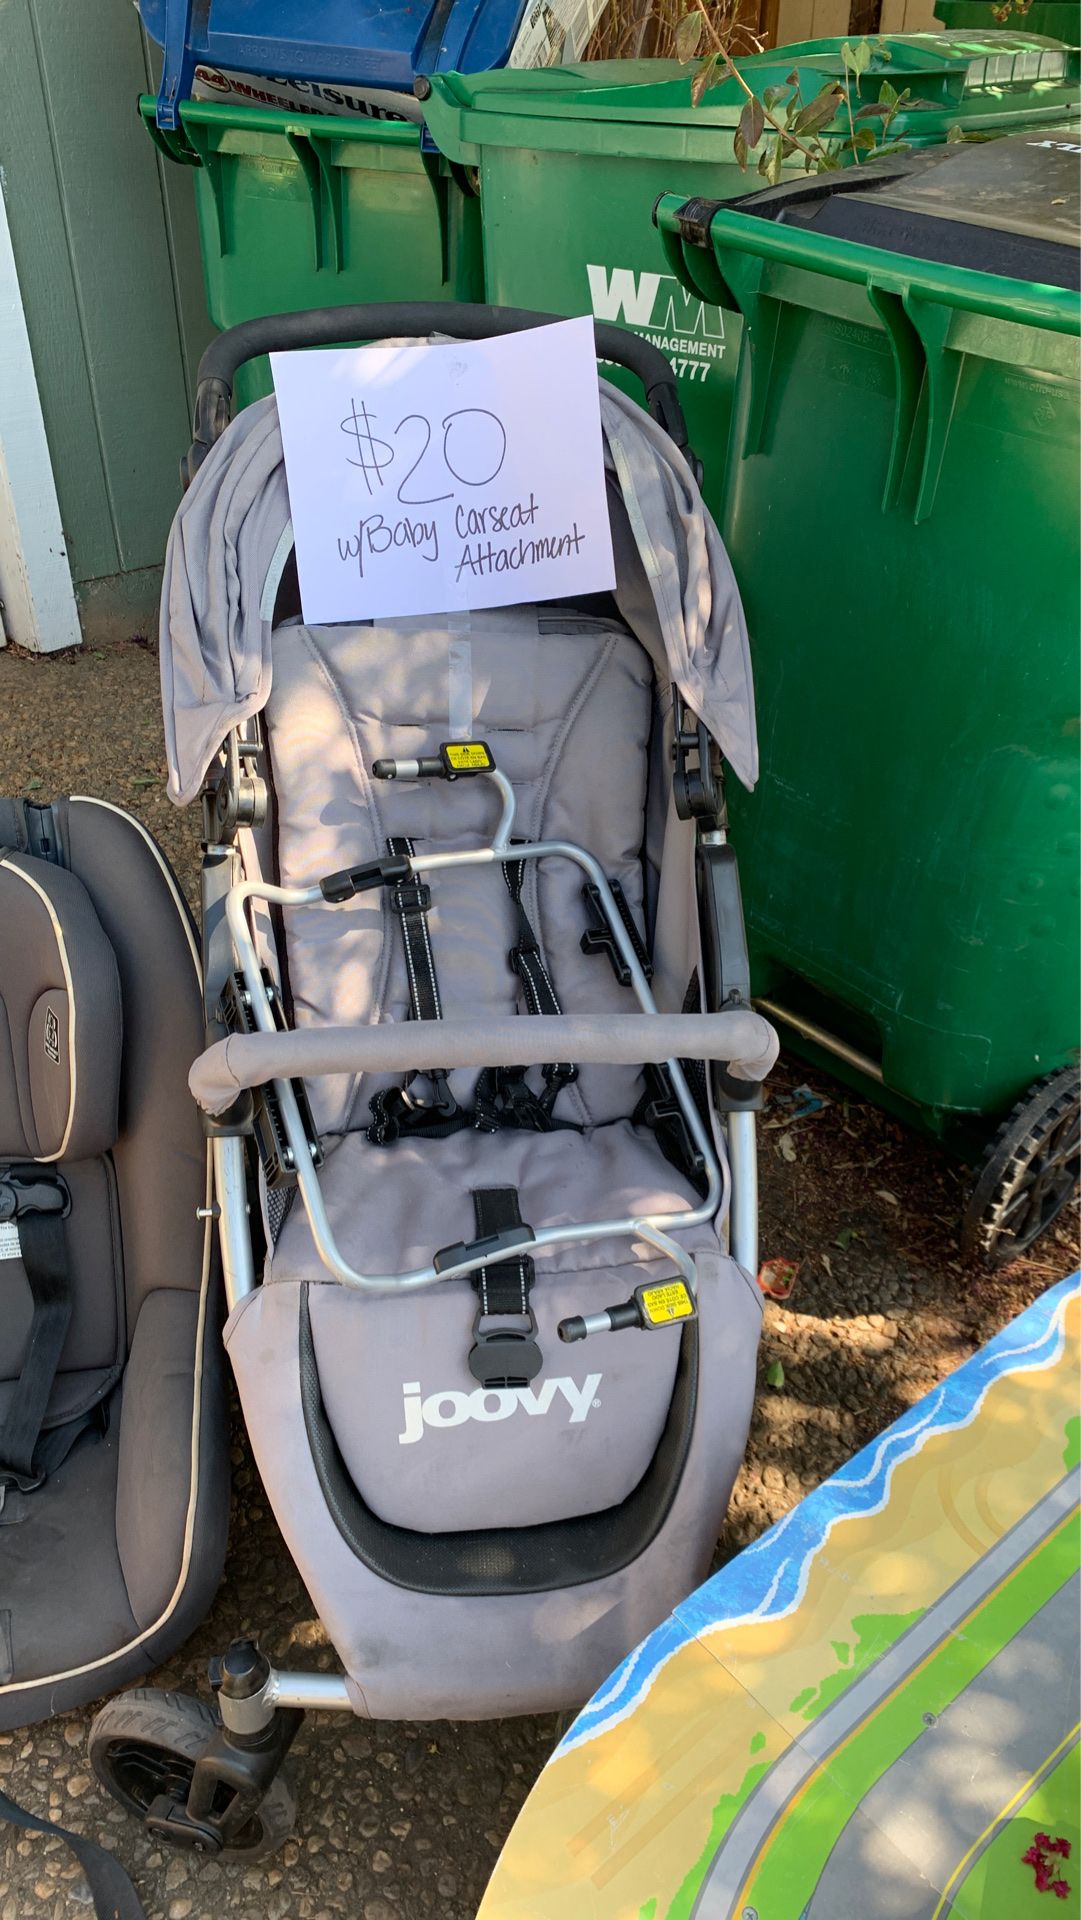 Joovy Stroller w/Car Seat attachment